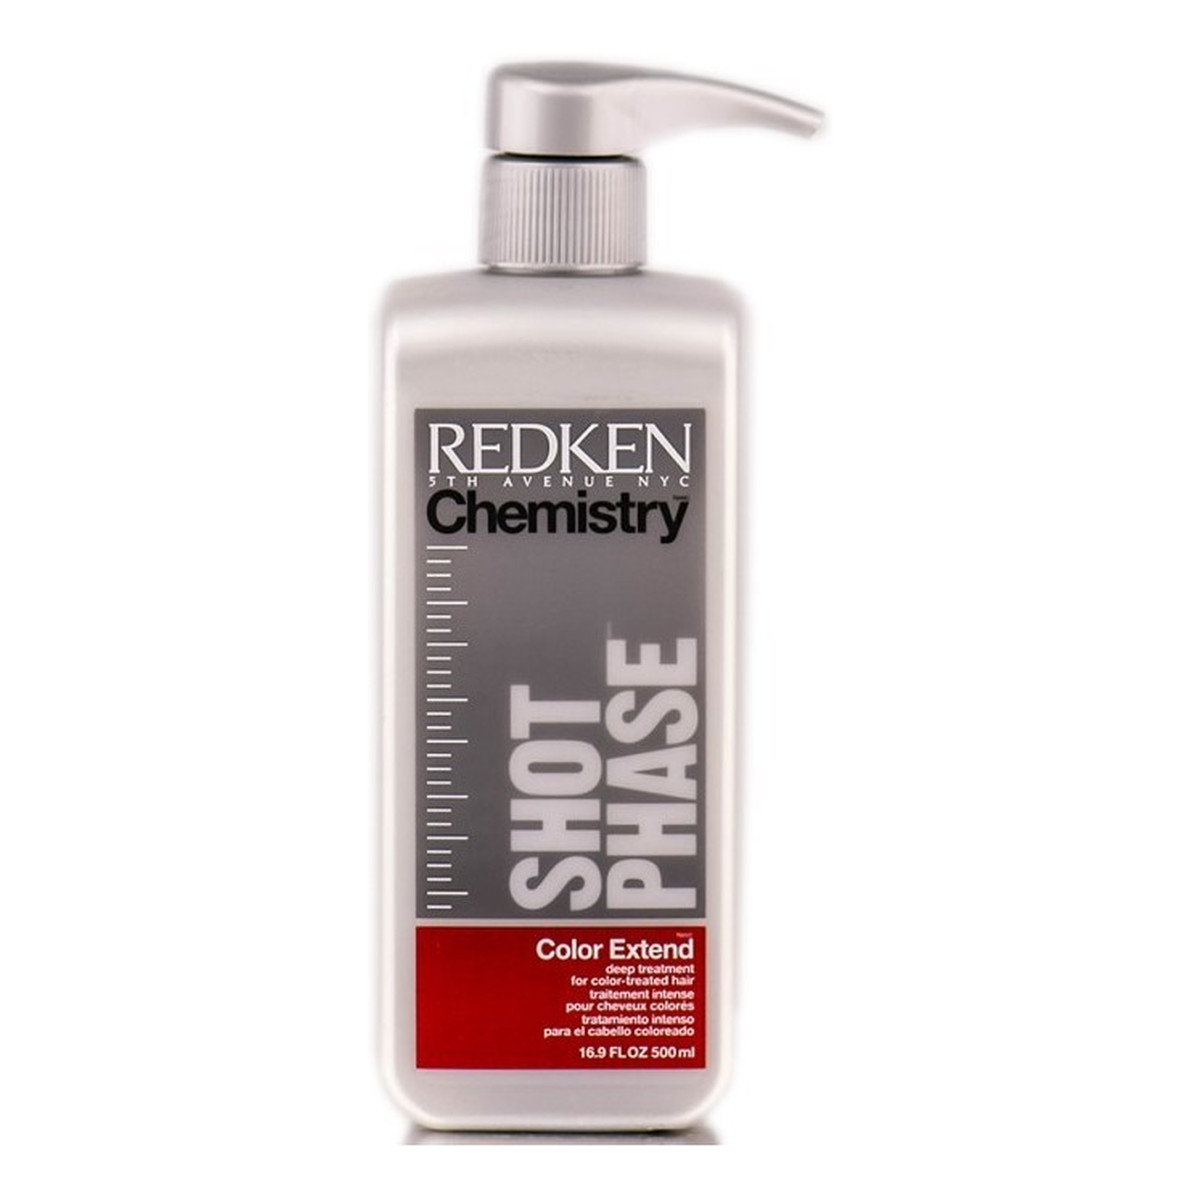 Redken Chemistry Shot Phase Kuracja do włosów farbowanych 500ml